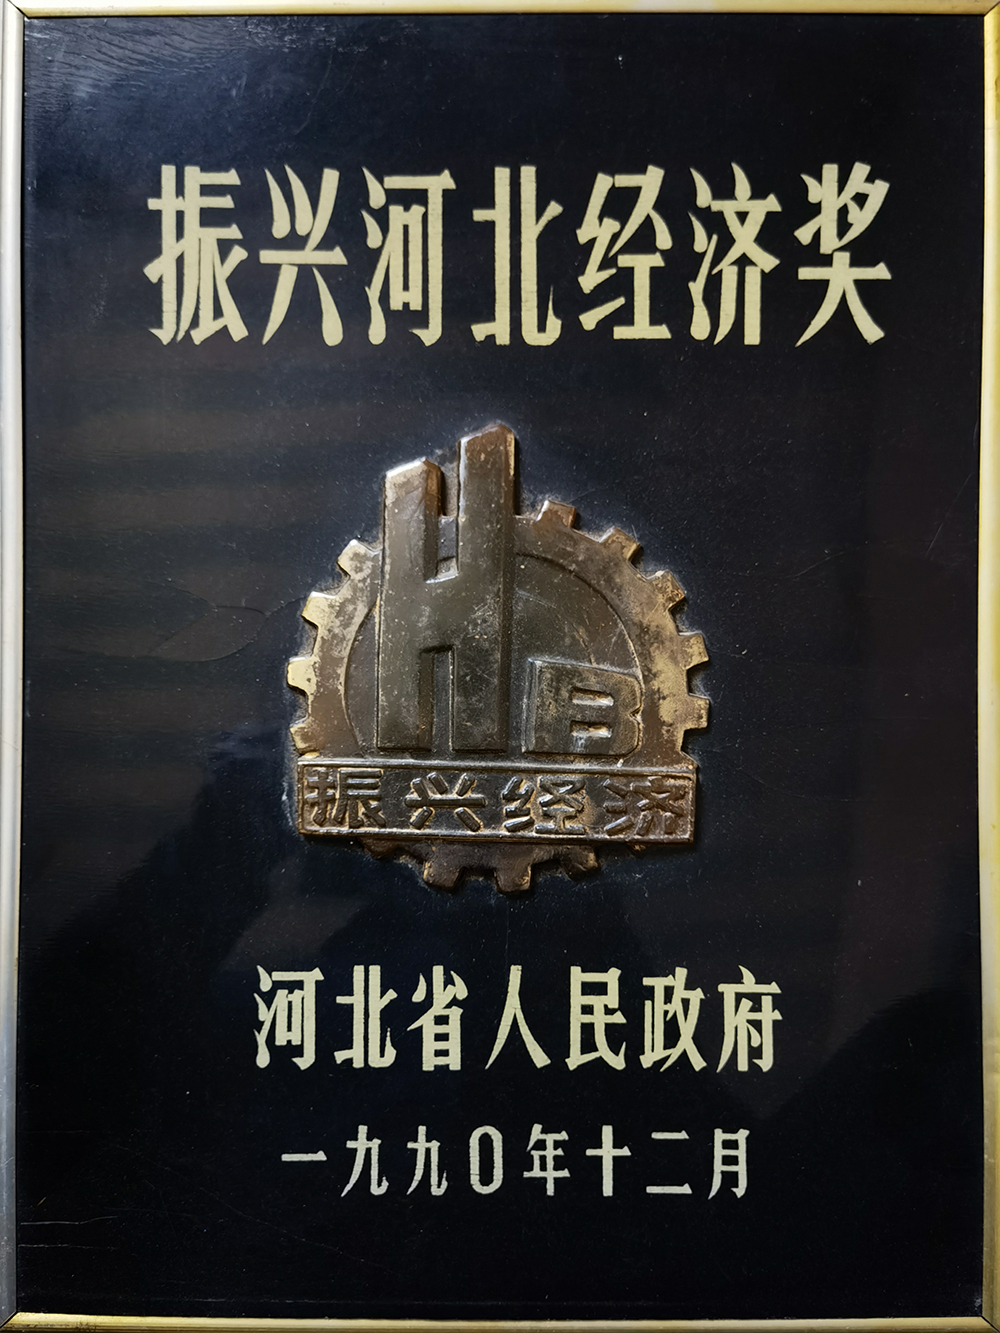 Revitalizing Hebei Economy Award